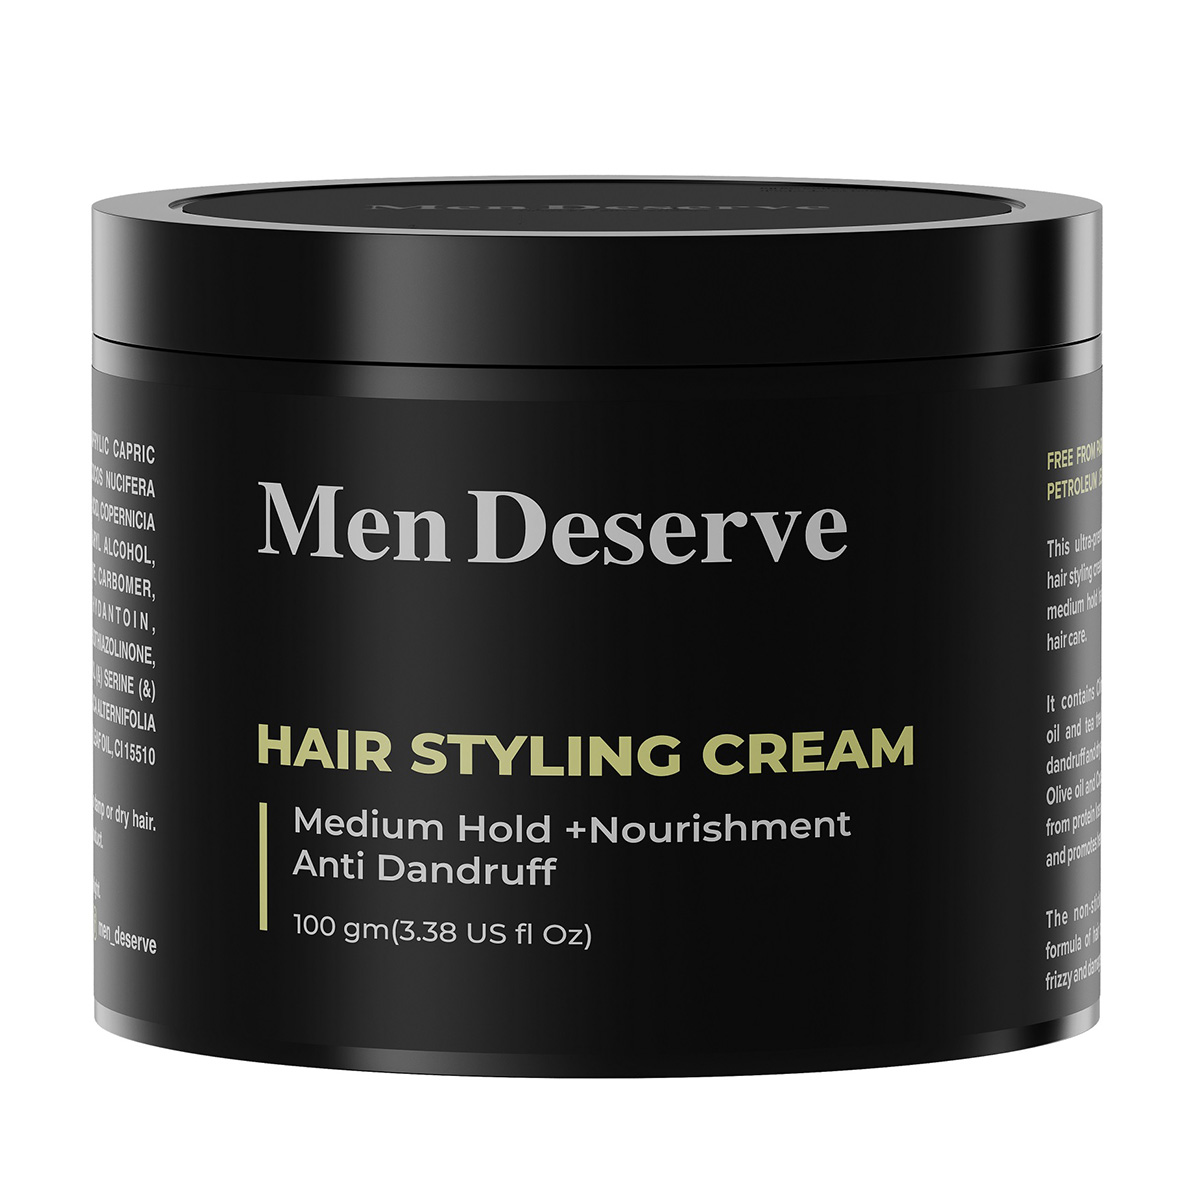 Men Deserve Hair Styling Cream For Medium Hold + Nourishment, 100gm